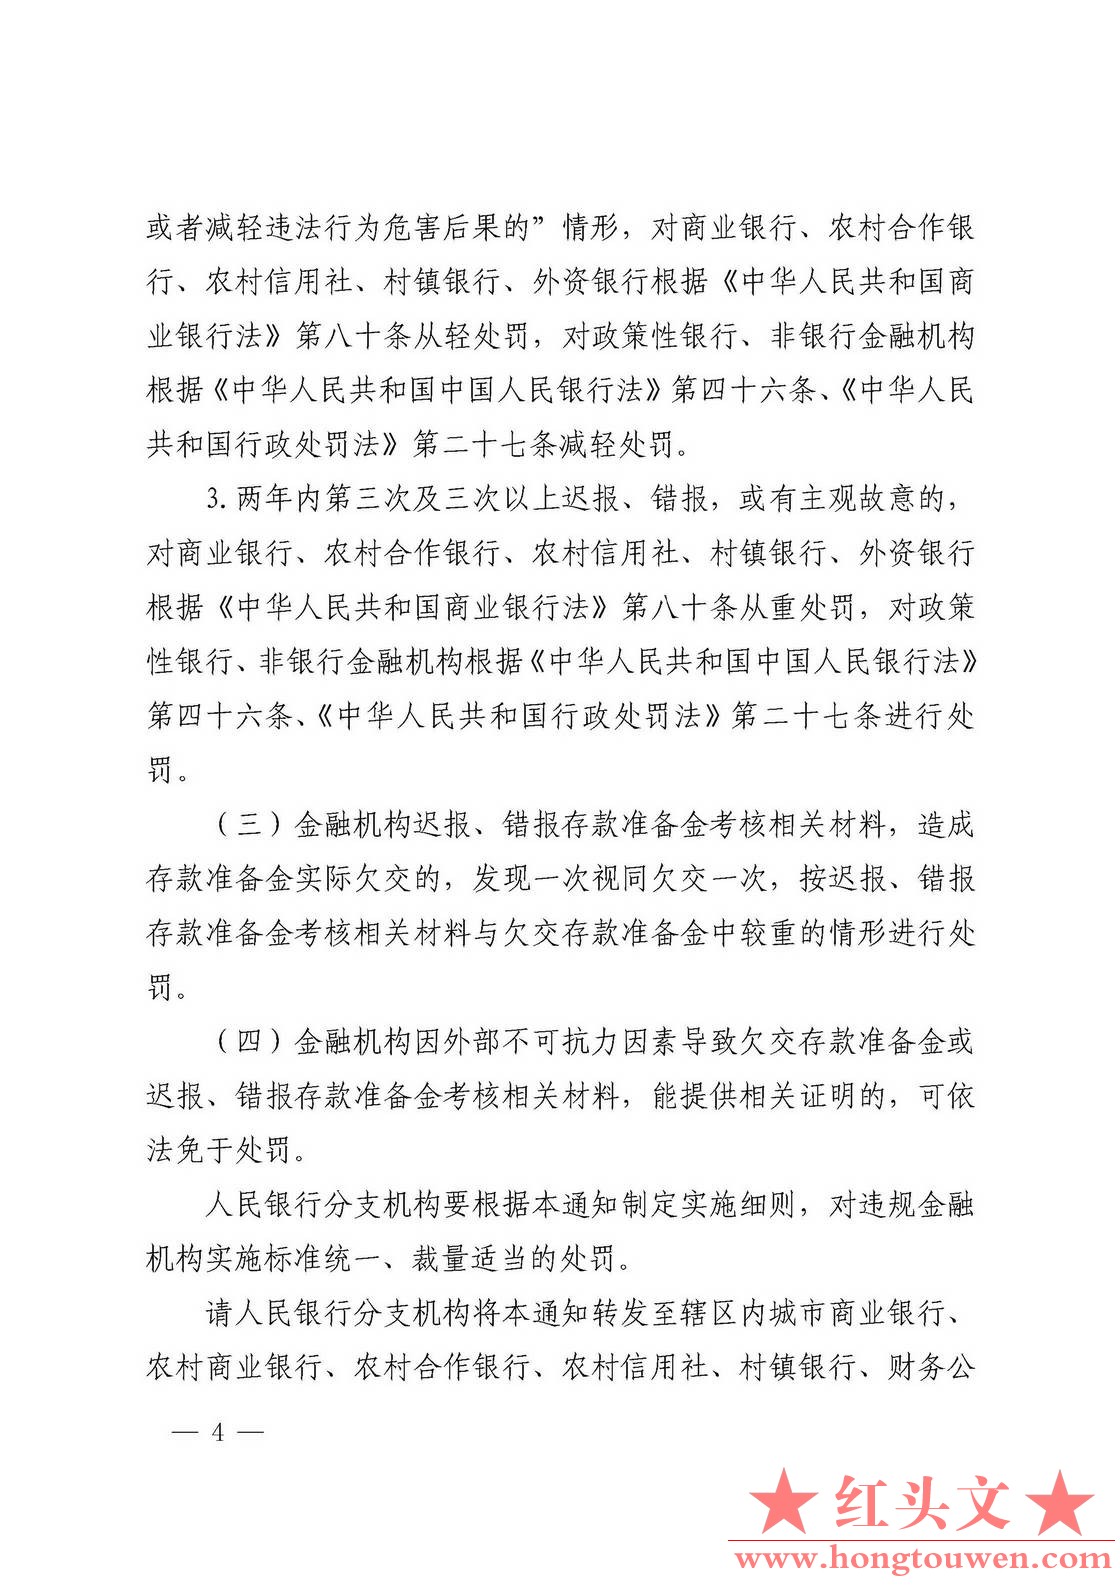 银发[2018]297号-中国人民银行关于加强存款准备金管理有关事项的通知_页面_4.jpg.jpg